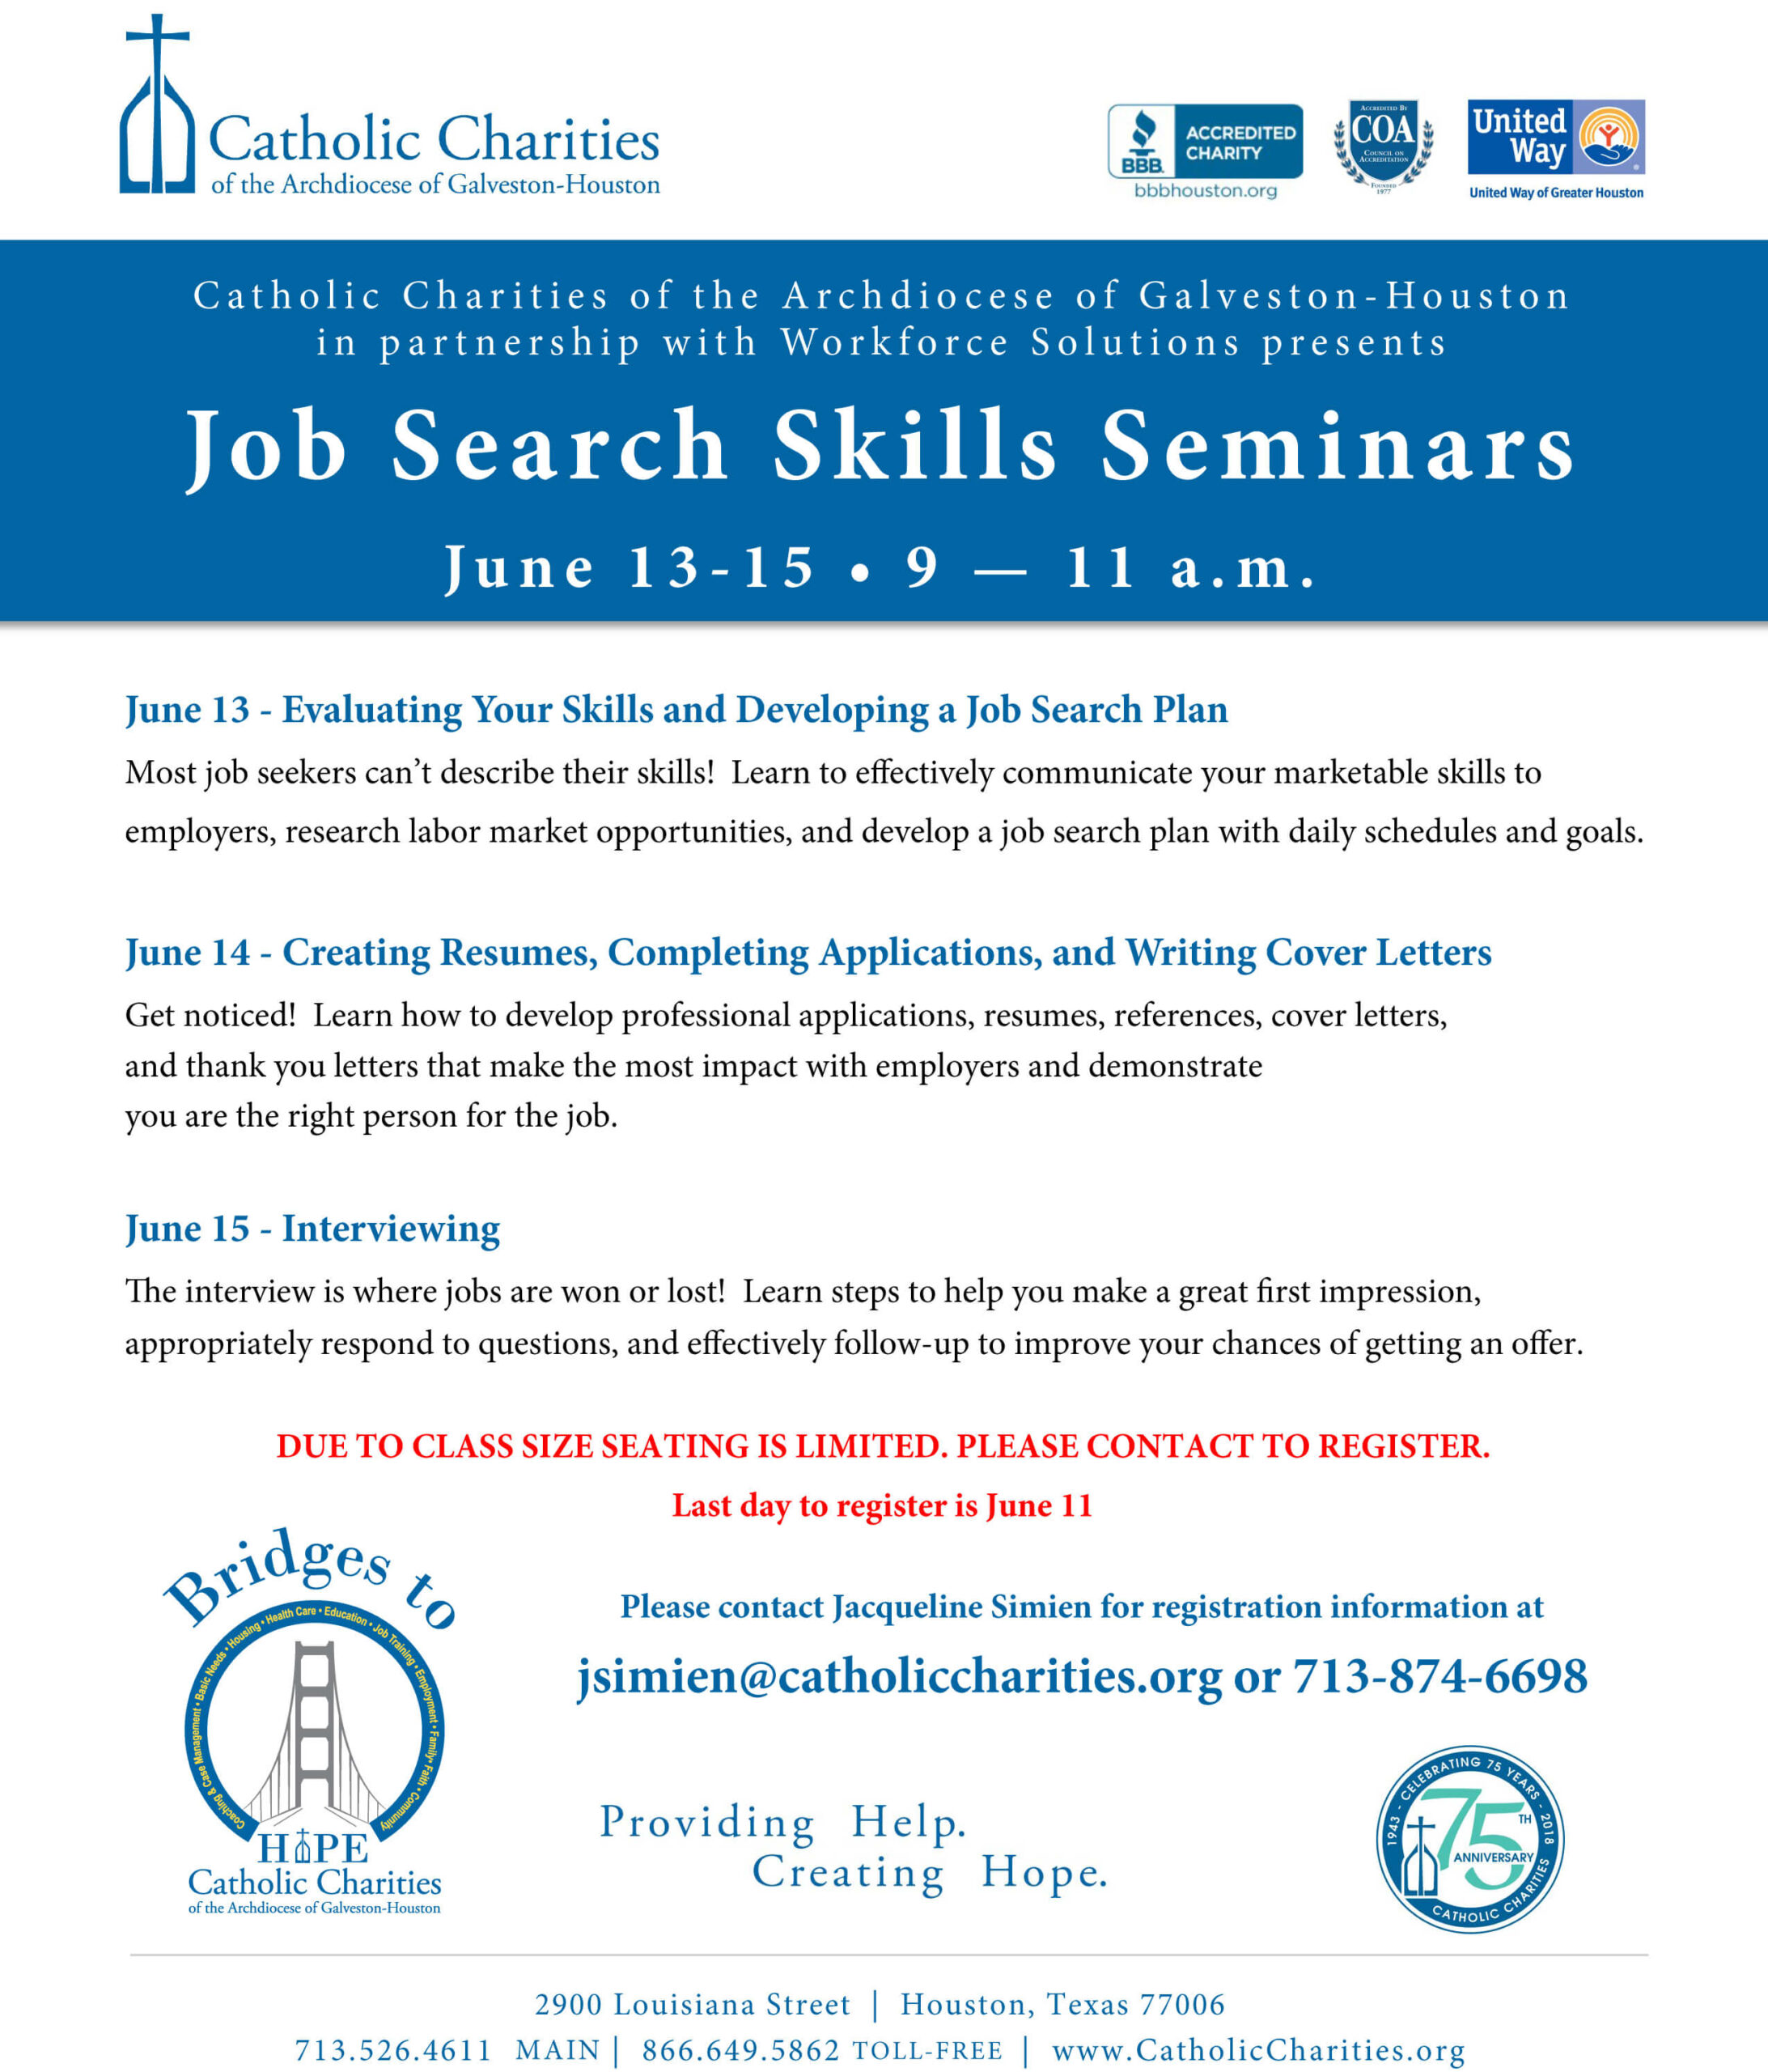 Job Search Skills Seminars